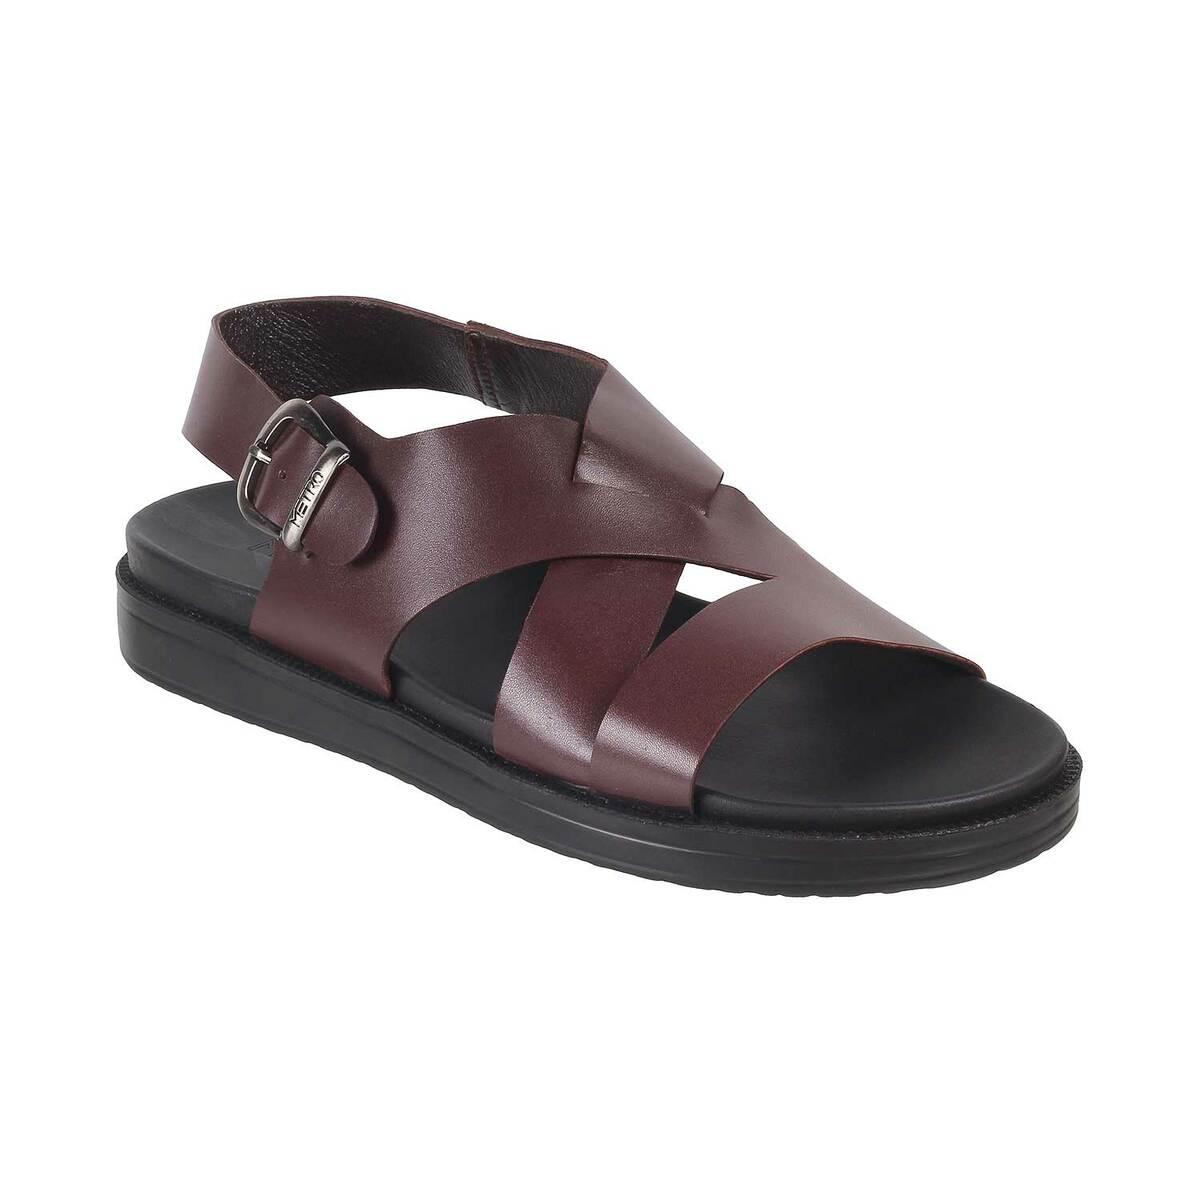 Buy Men Black Casual Slippers Online | SKU: 16-245-11-40-Metro Shoes